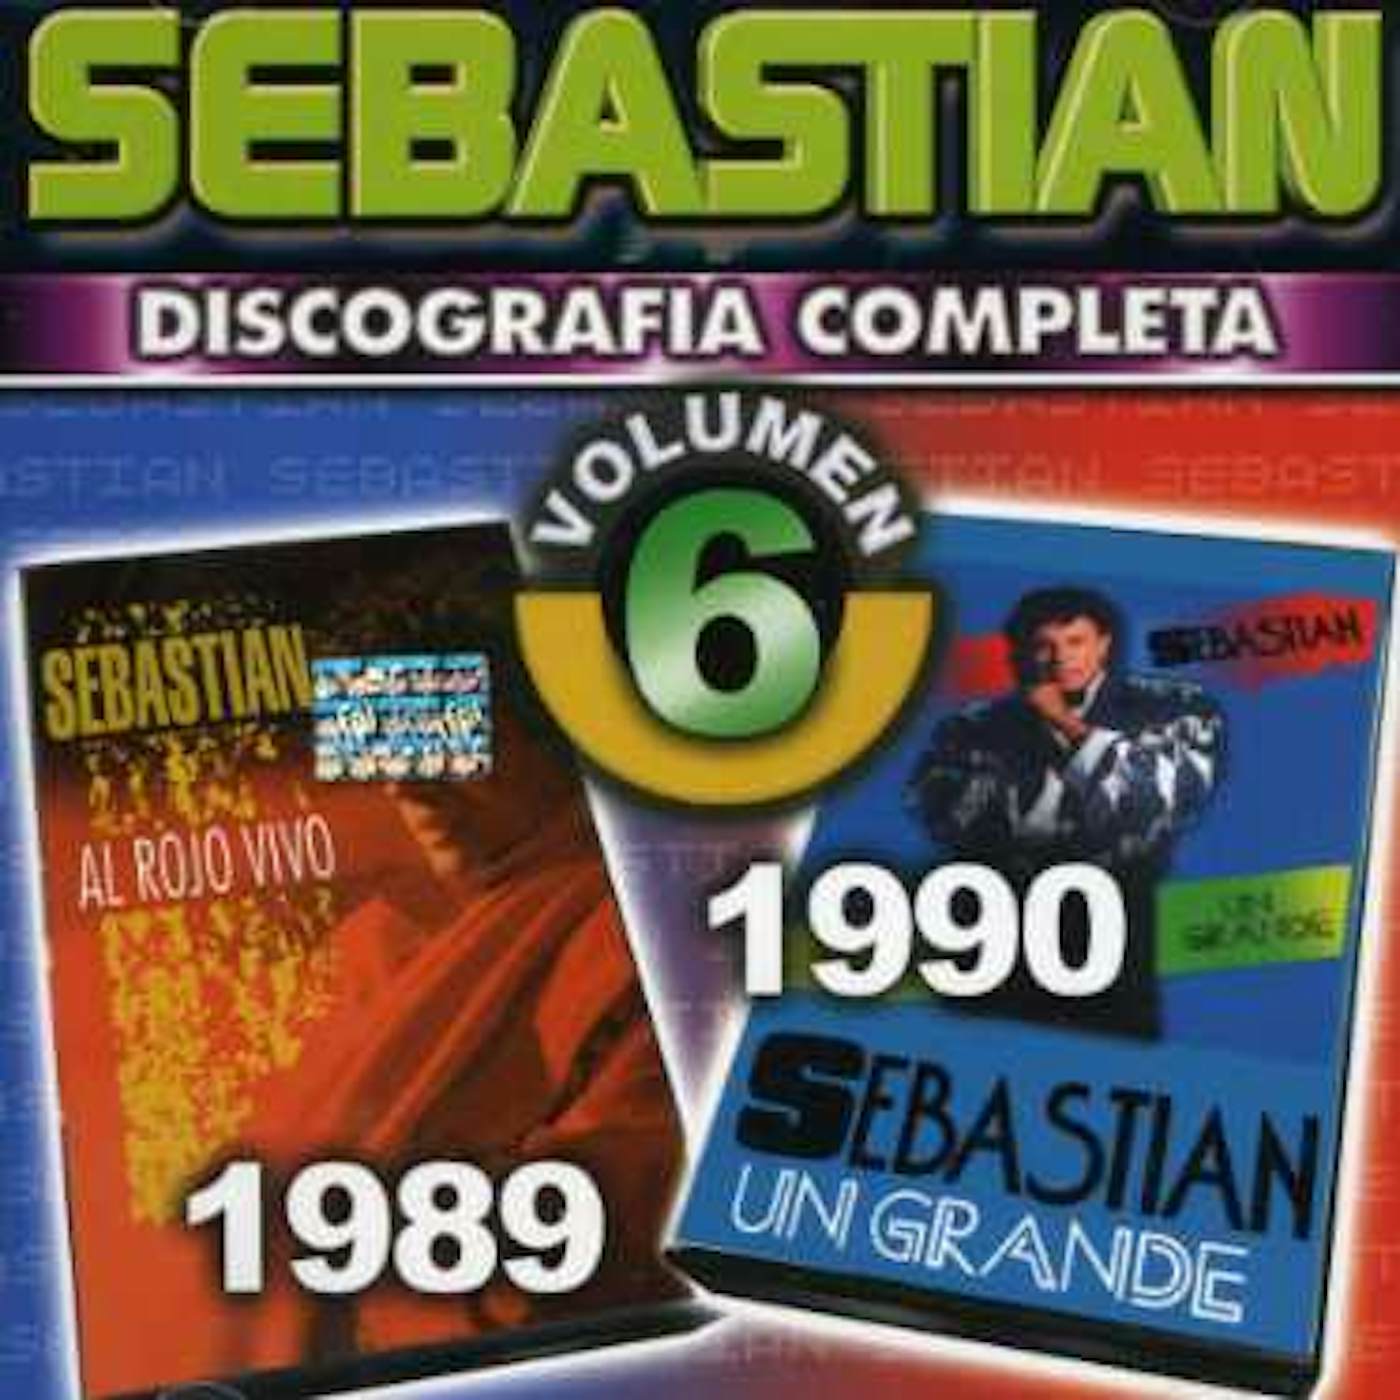 SebastiAn DISCOGRAFIA COMPLETA 6 CD